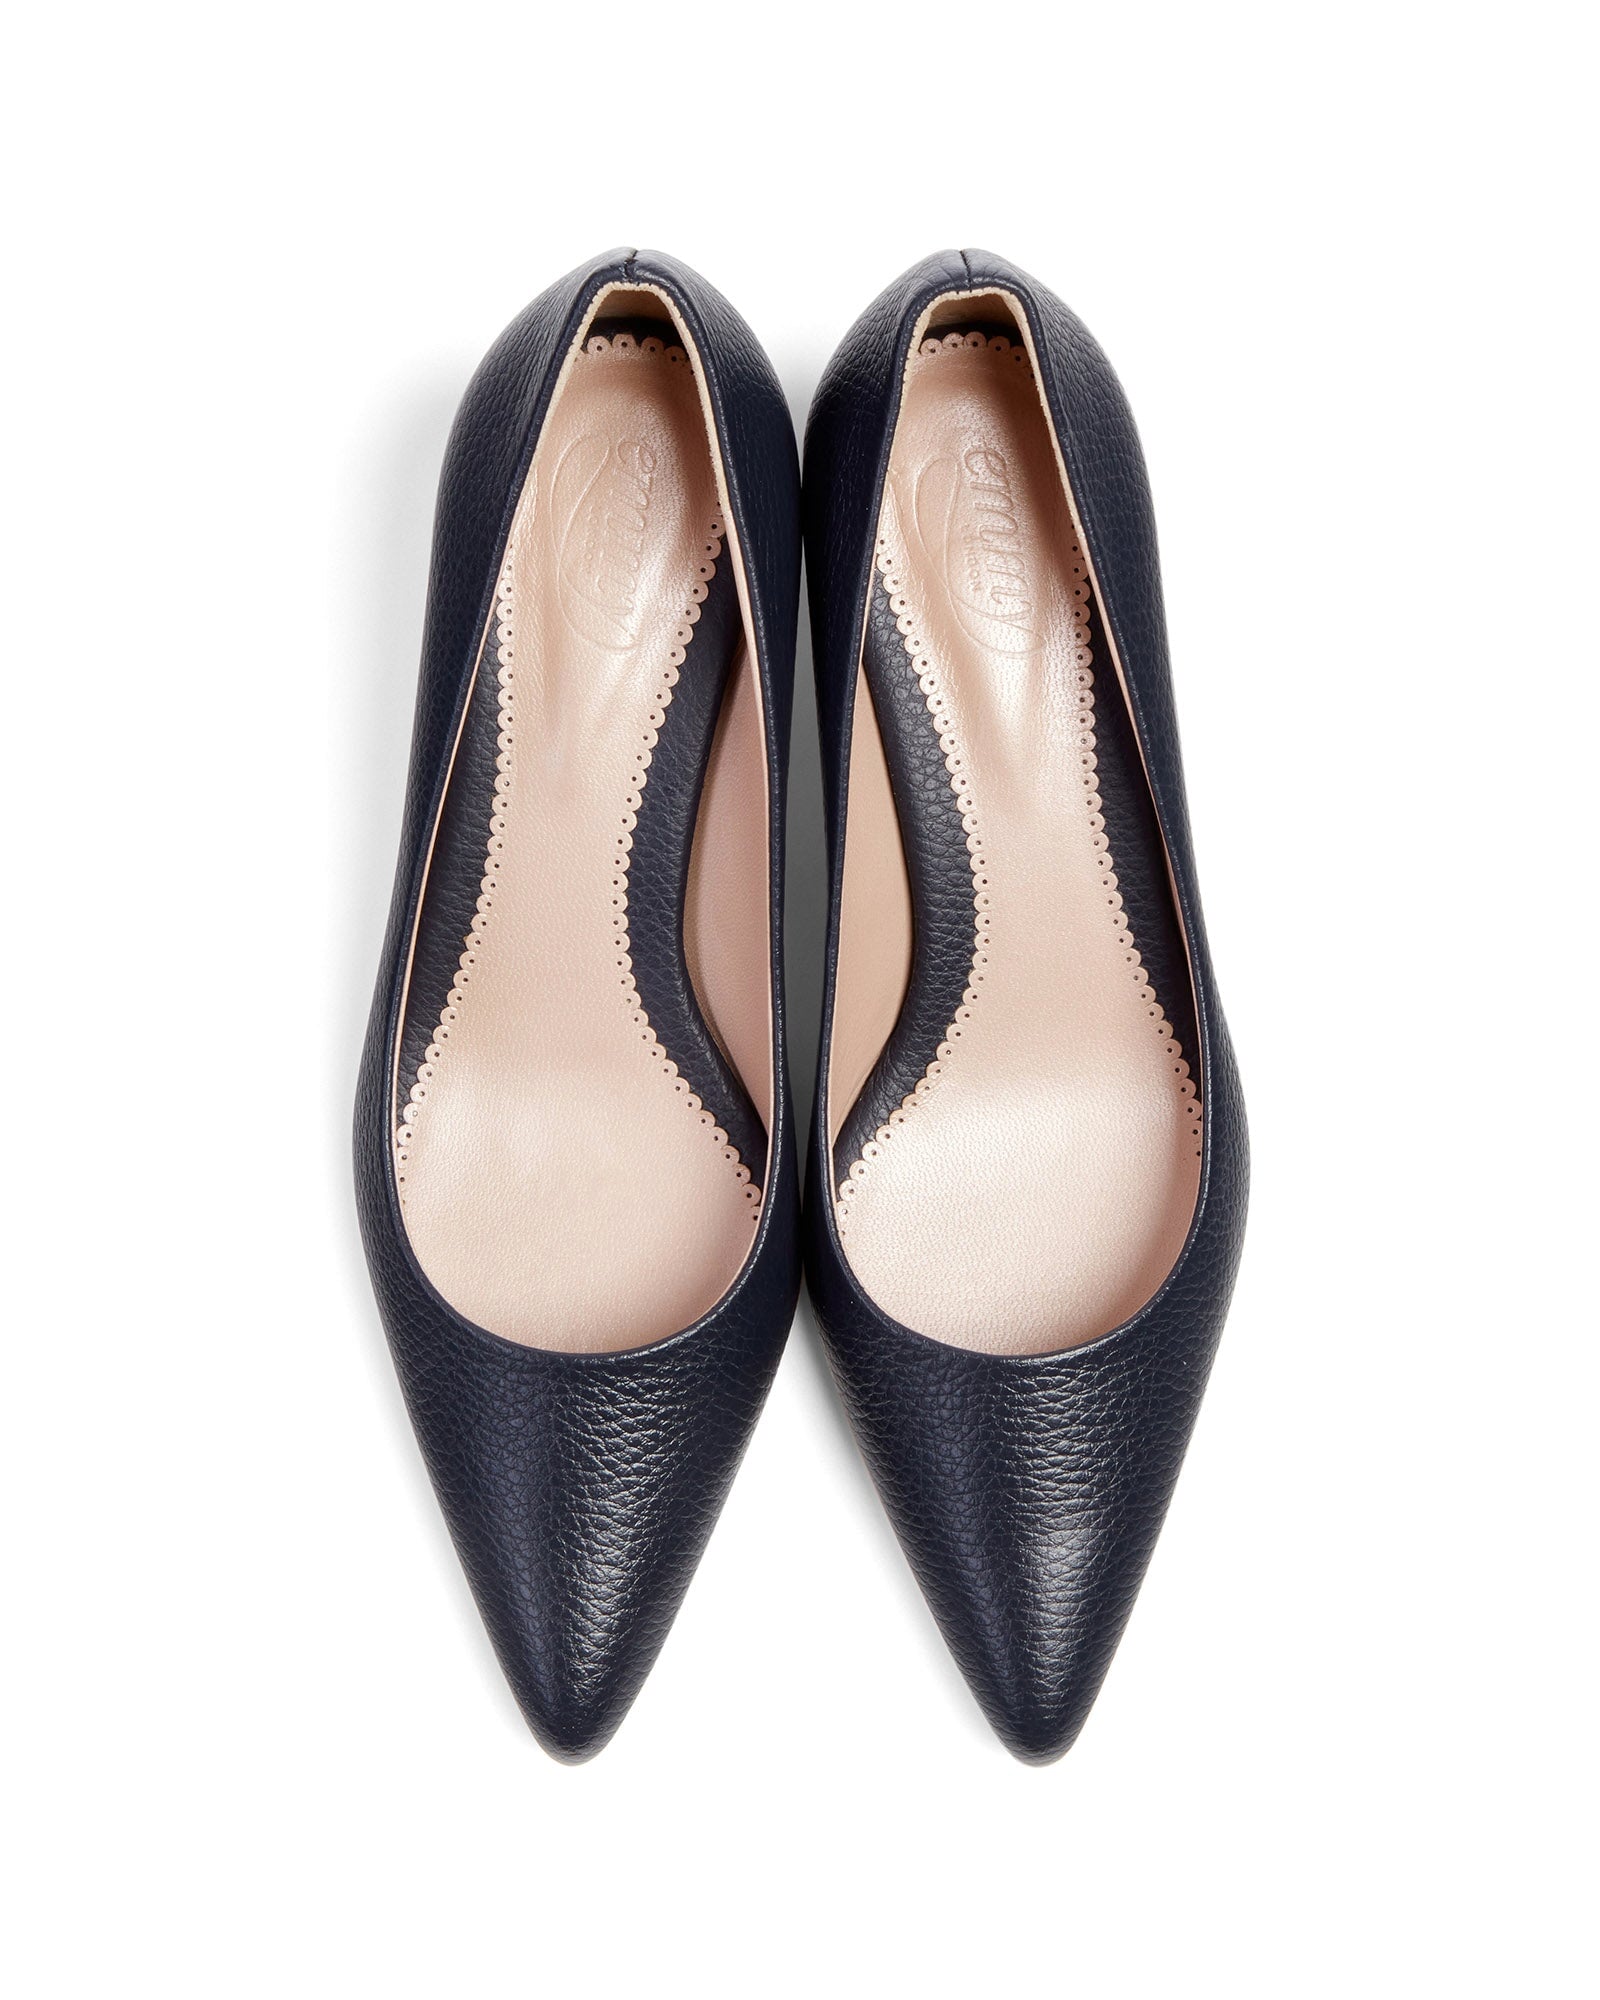 Josie Kitten Textured Dark Navy Leather Fashion Shoe Pointed Block Heel Court Shoes  image